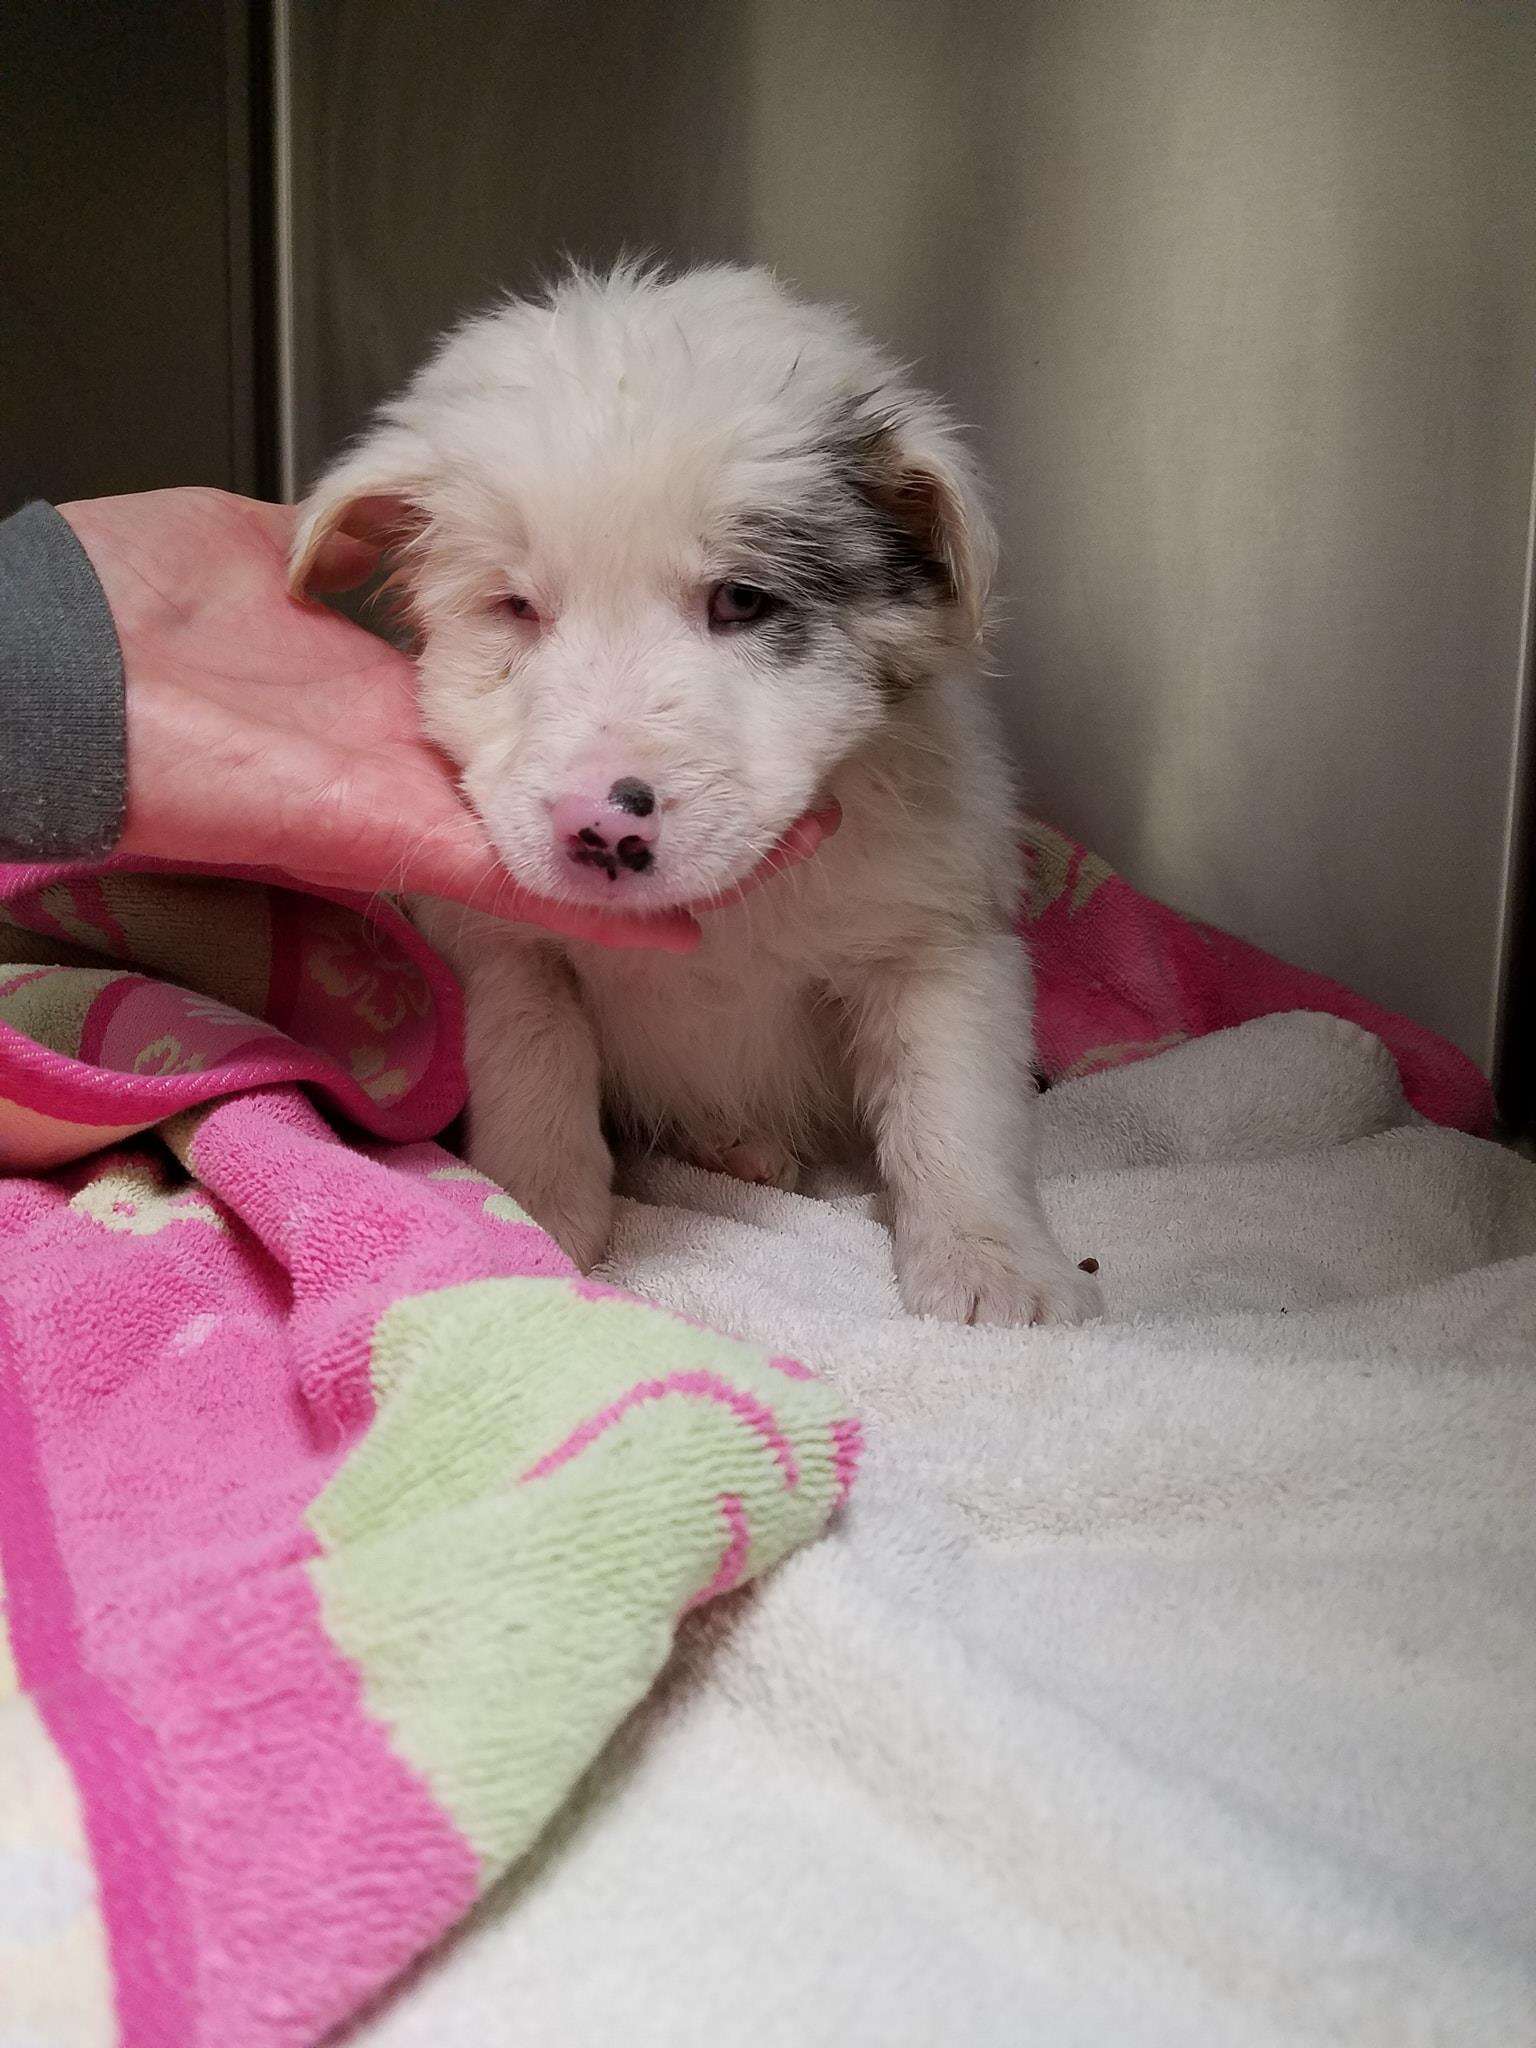 Sick puppy in vet kennel